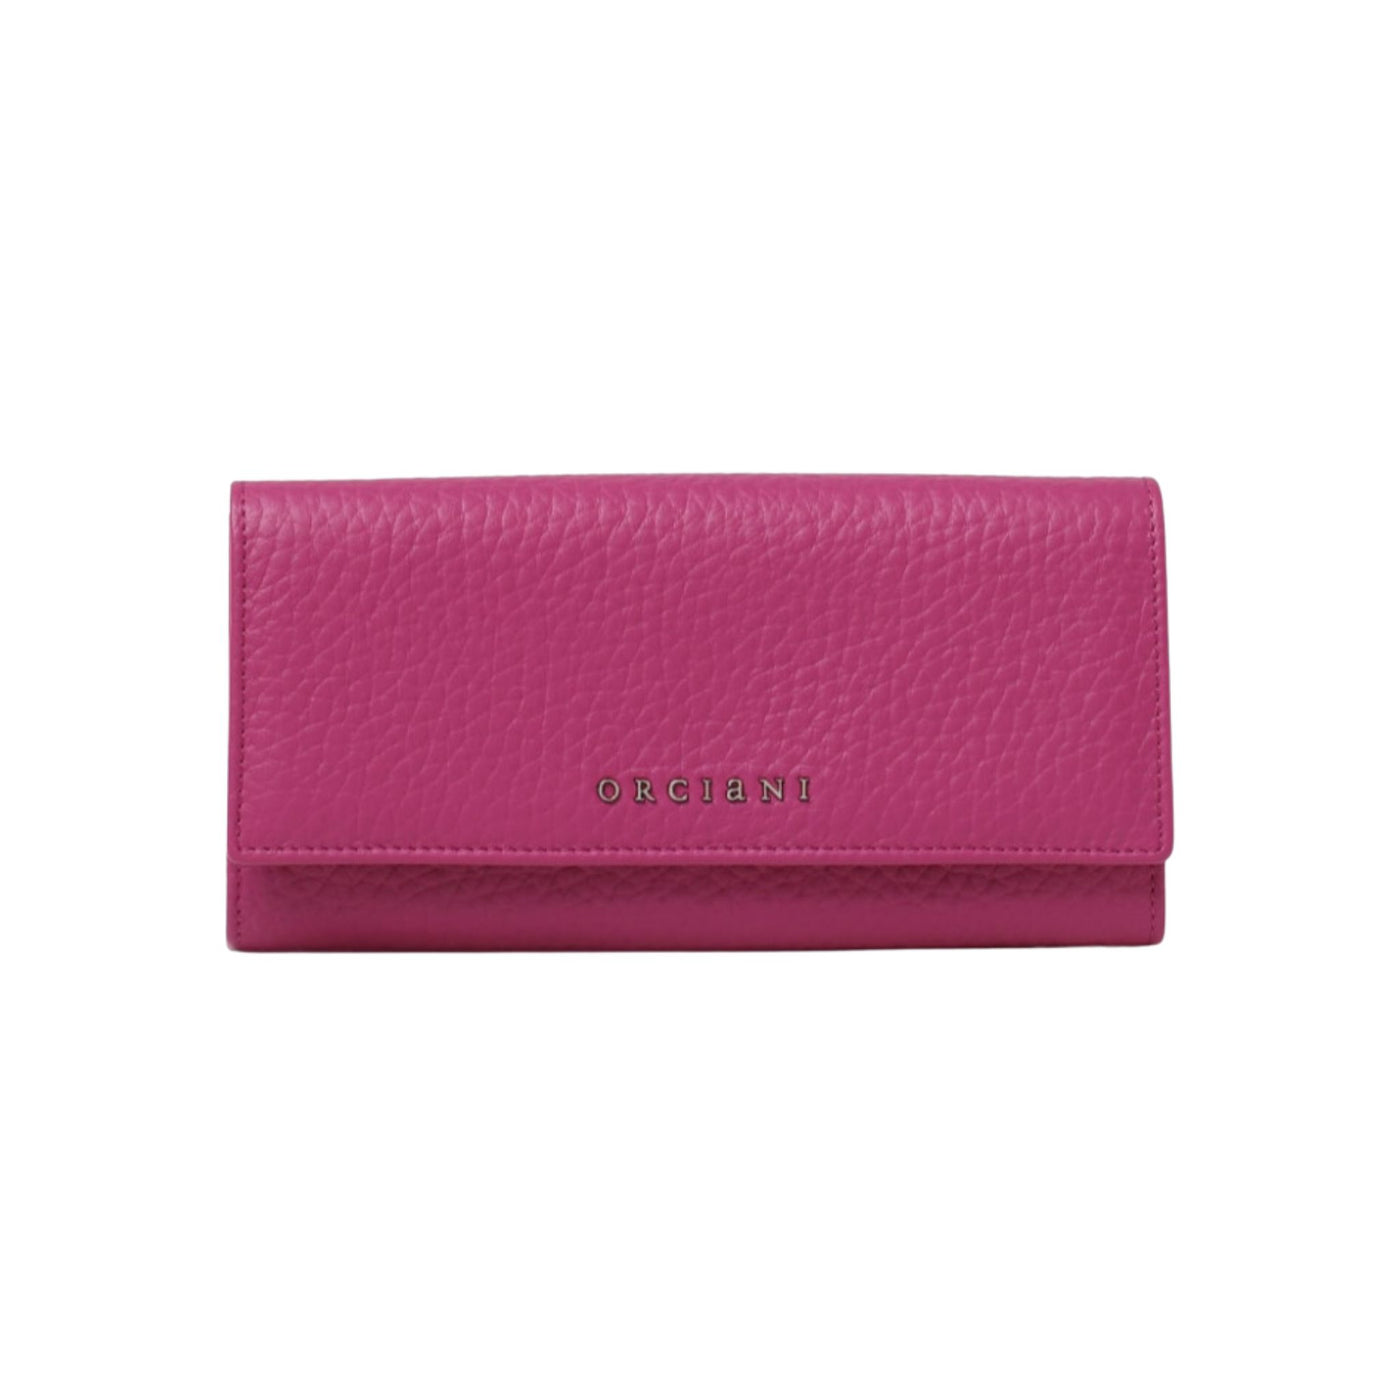 Fuchsia women's wallet in leather